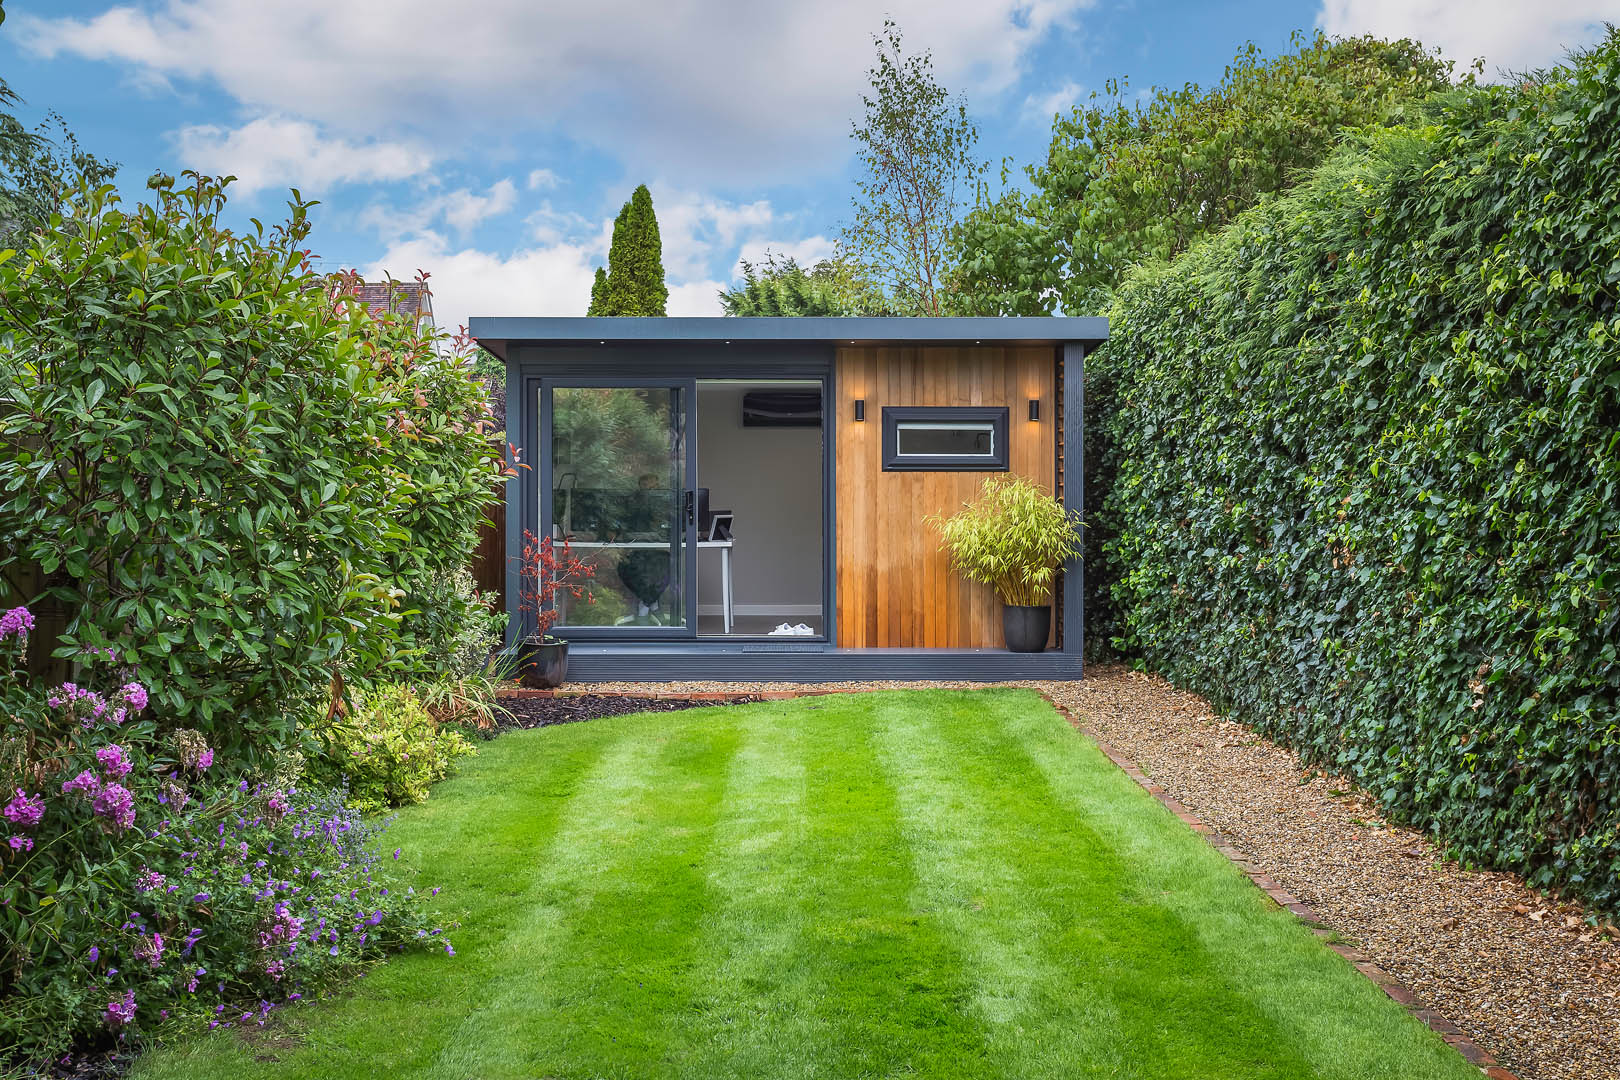 Garden Office Pods | Modern Home Office Solutions | The Garden Office